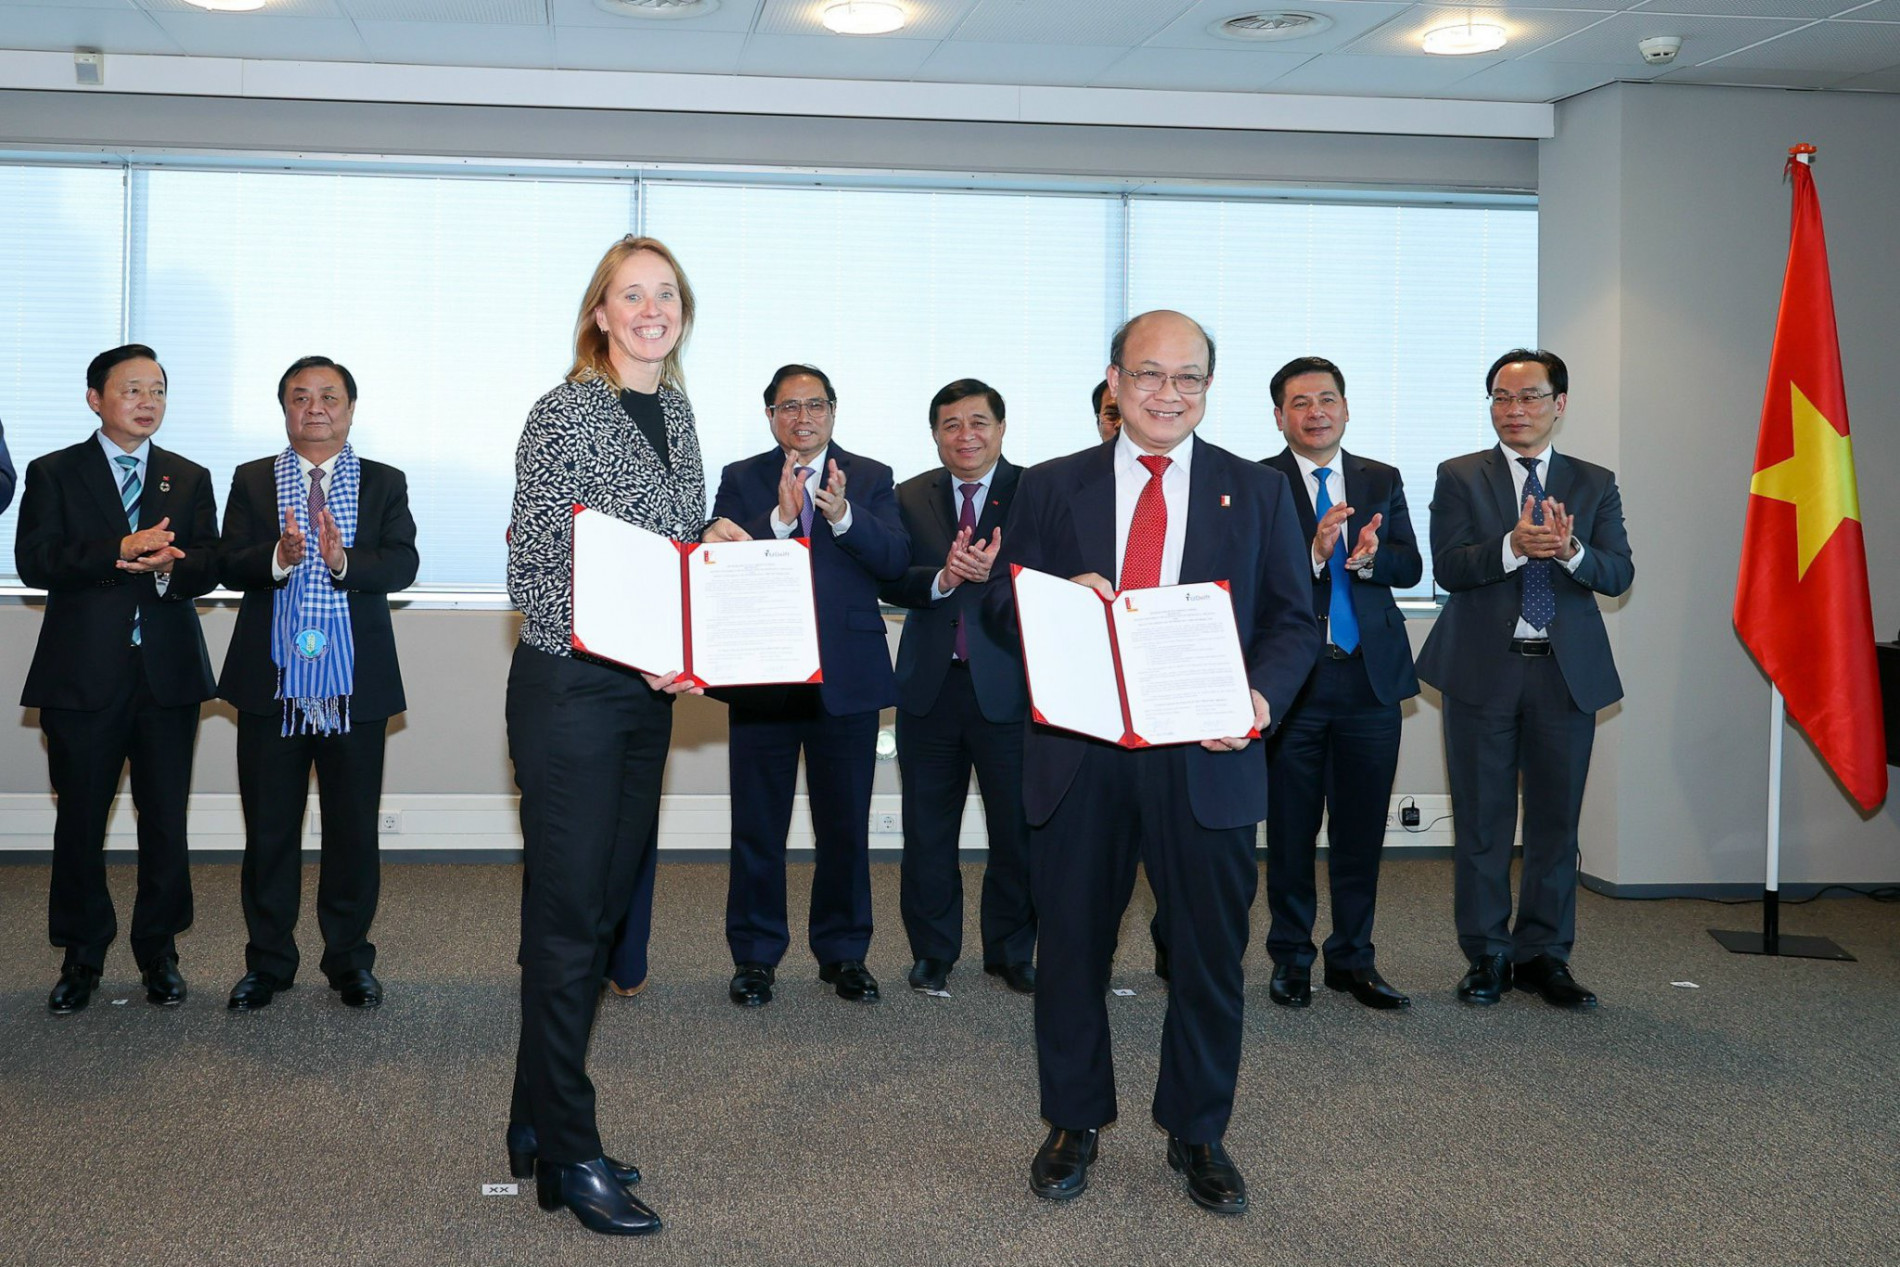 PGS Huỳnh Quyết Thắng đại diện Đại học Bách khoa Hà Nội ký kết với Trường TU Delft dưới sự chứng kiến của Thủ tướng Chính phủ và các lãnh đạo cấp cao tại Den Haag, Hà Lan